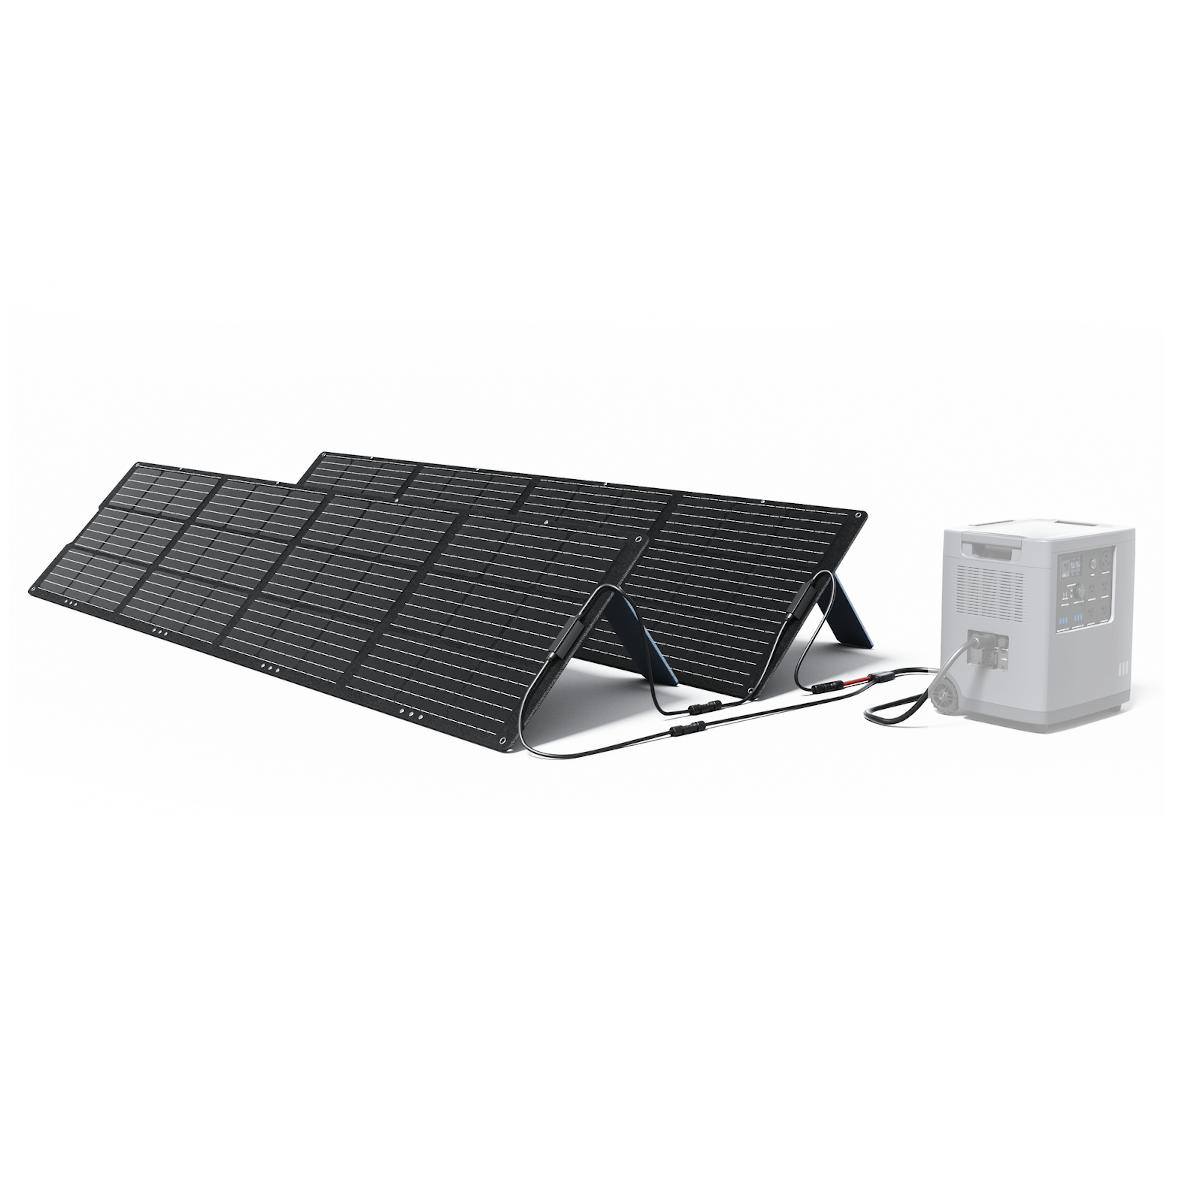 [EU Diretto] Set di 2 Pannelli Solari Portatili Pieghevoli Mango Power 200W Tasso di Conversione Elevato del 22% Caricatori Solari Impermeabili IP67